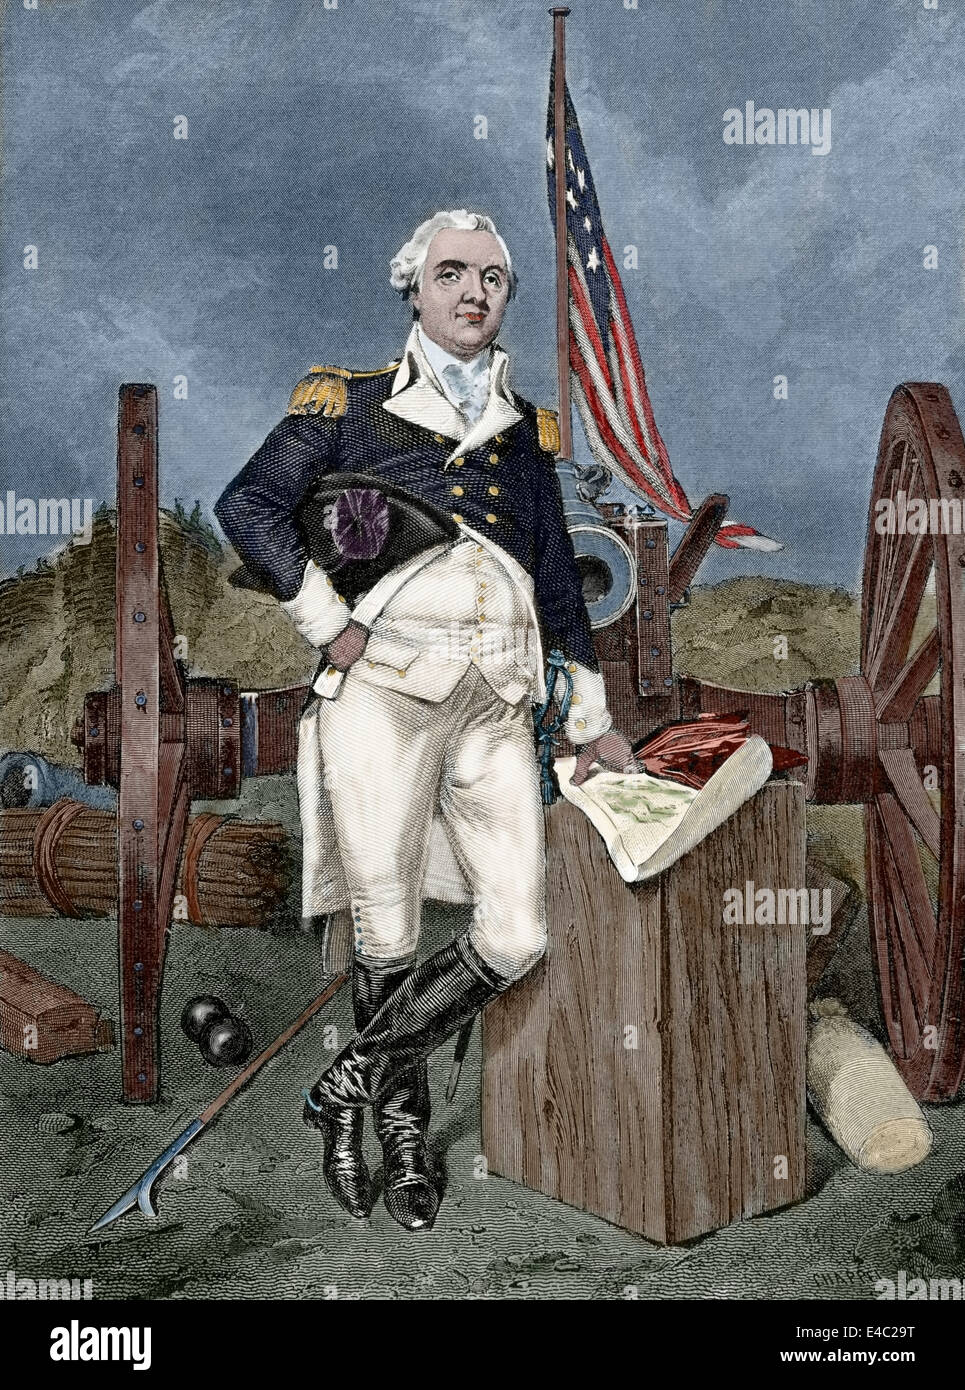 Henry weiß (1750-1806). Offizier der Kontinentalarmee und später die United States Army. Gravur. Farbige. Stockfoto